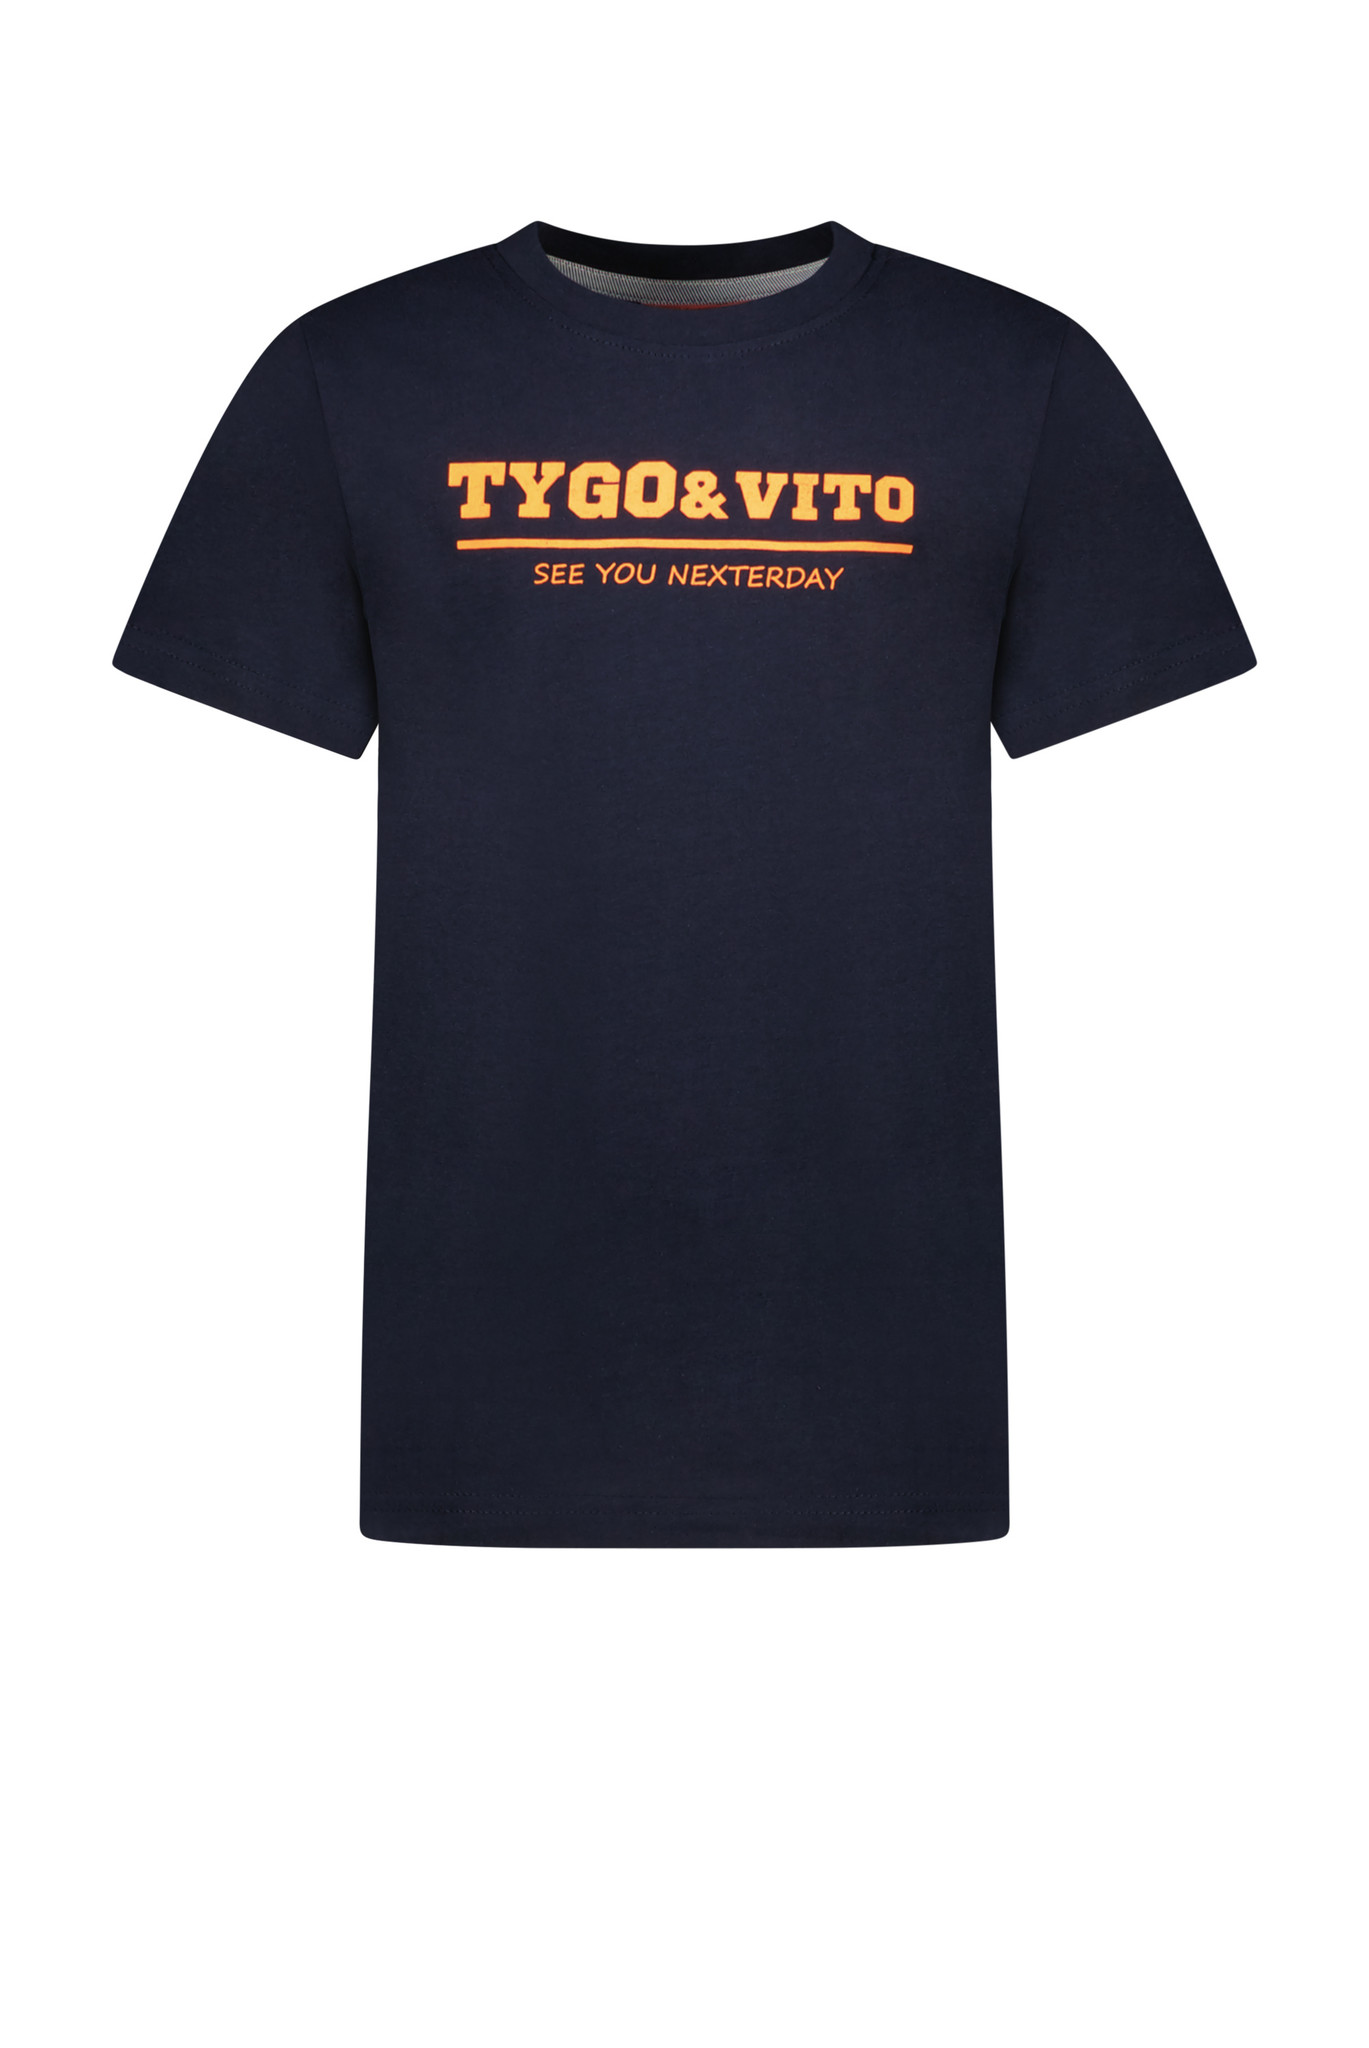 TYGO & vito X302-6420 Jongens T-shirt - Maat 122/128